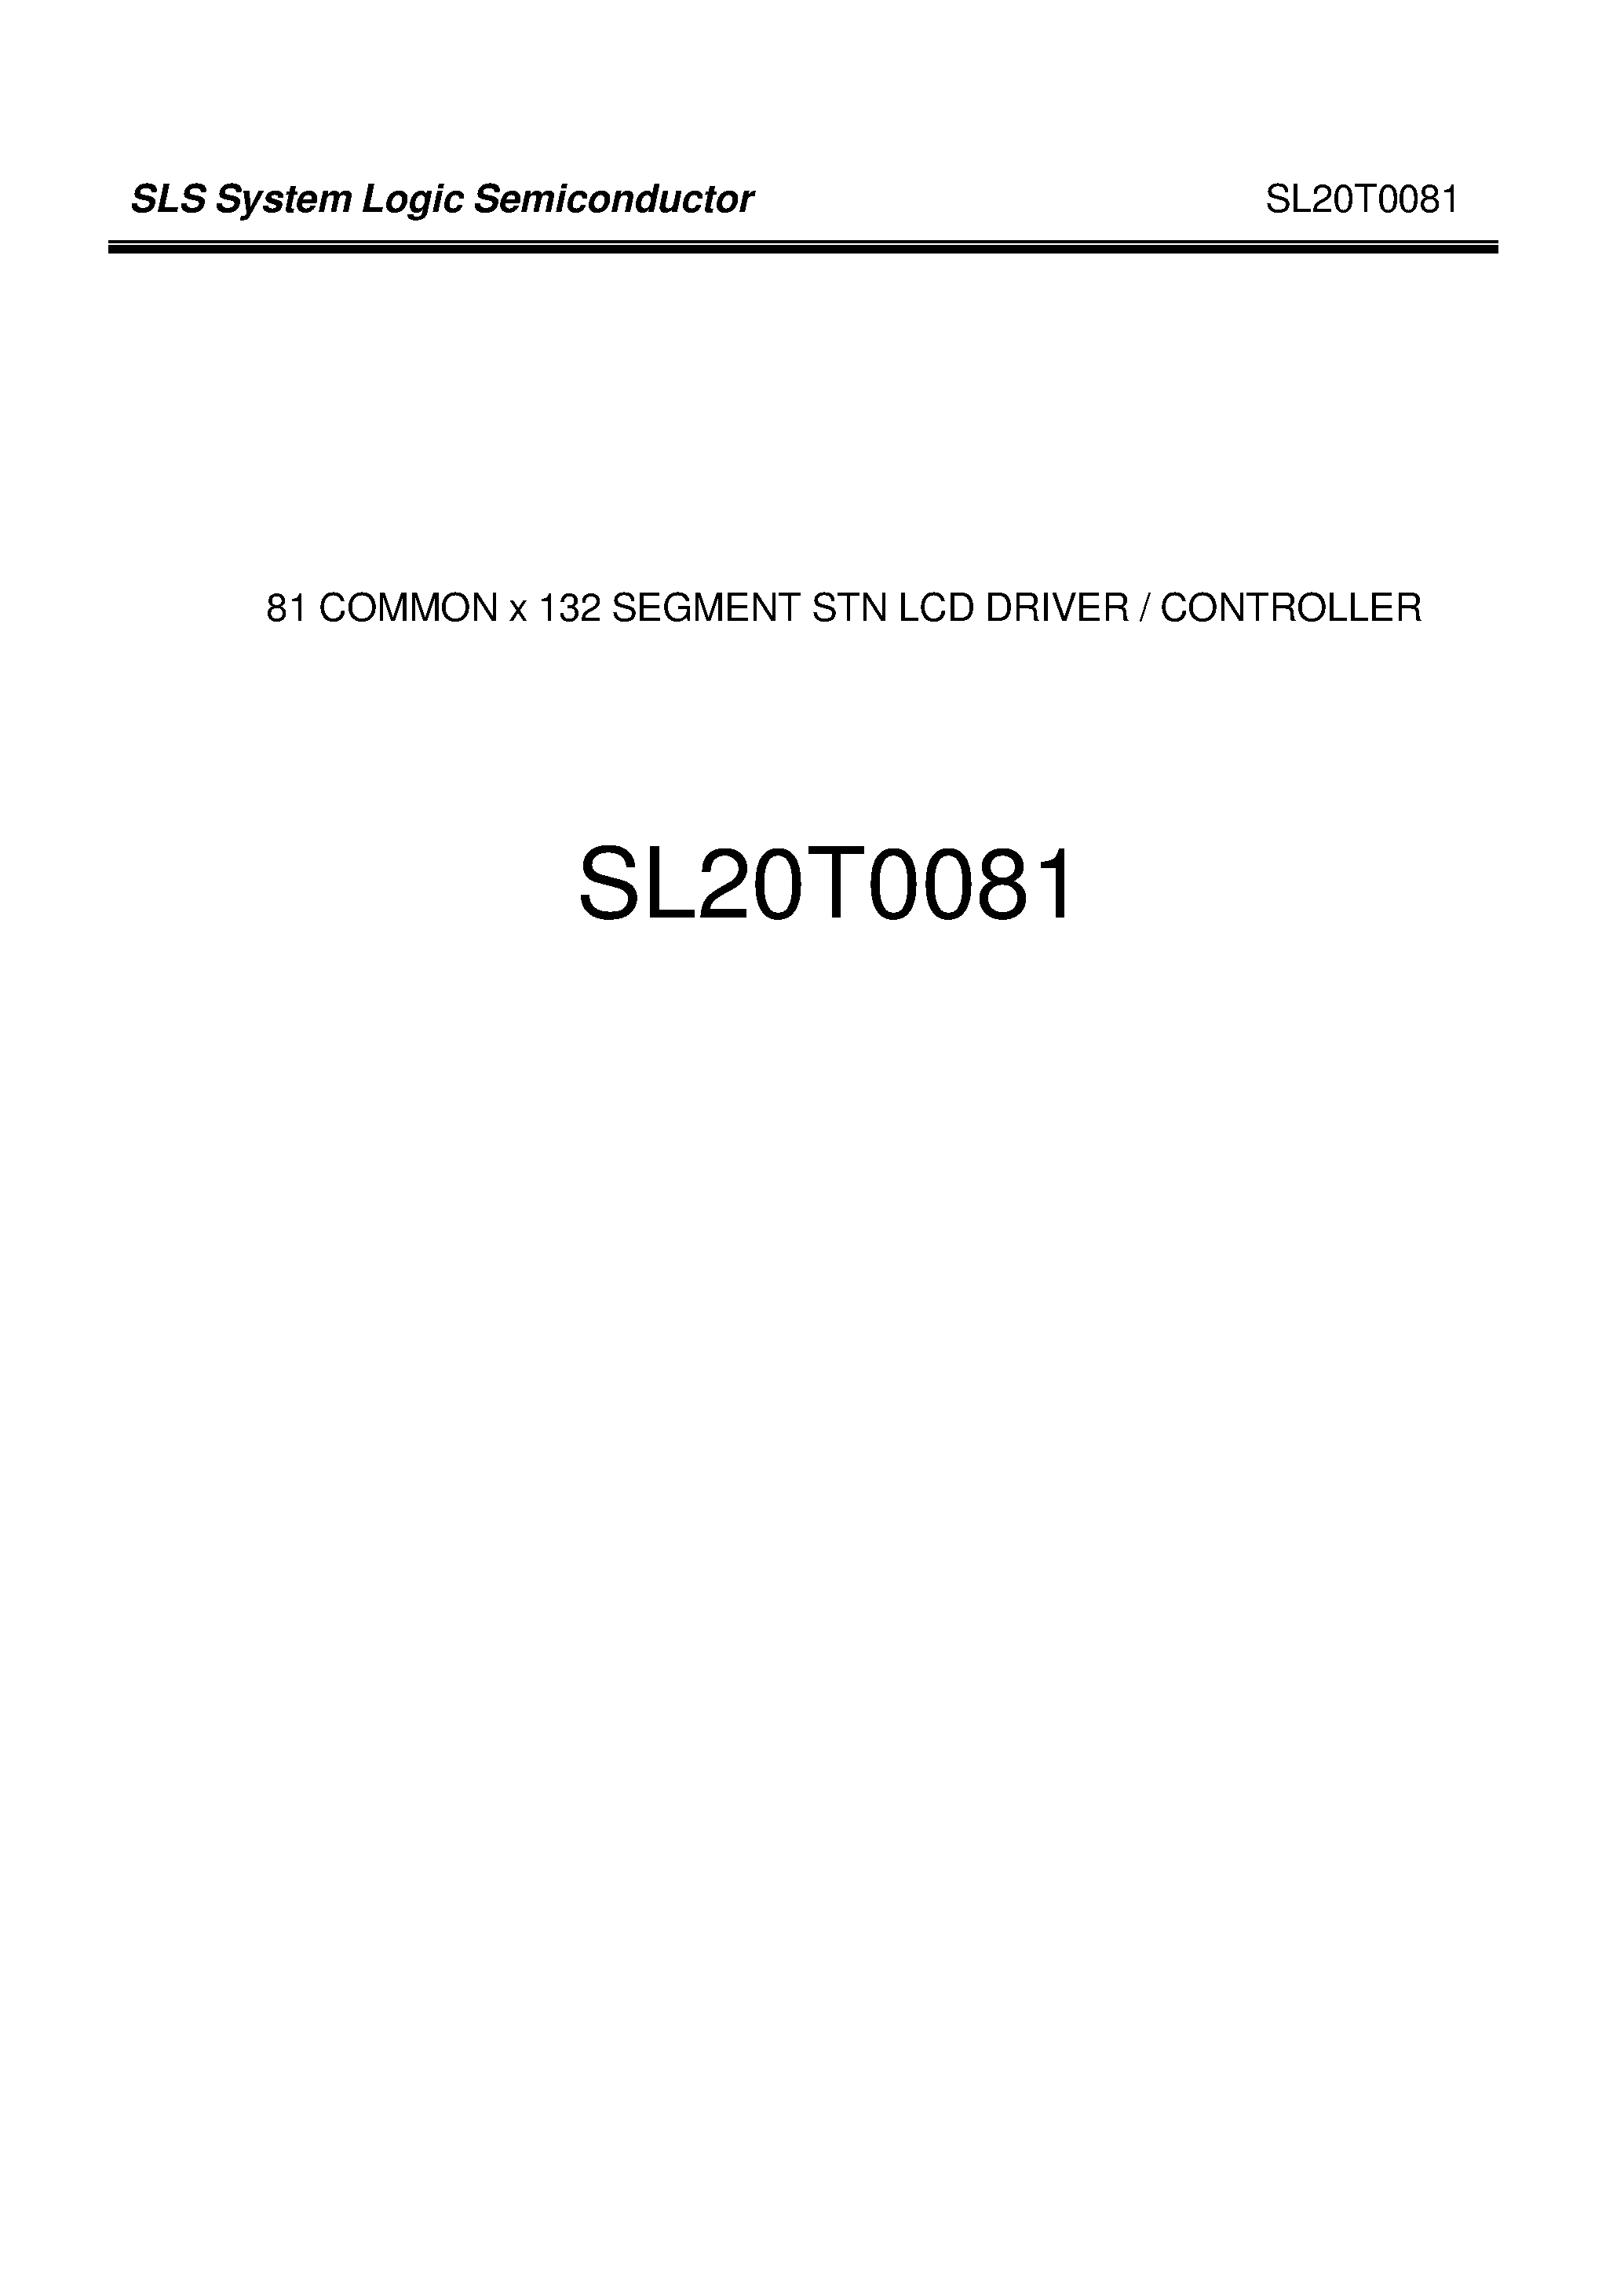 Даташит SL20T0081 - SLS System Logic Semiconductor страница 1